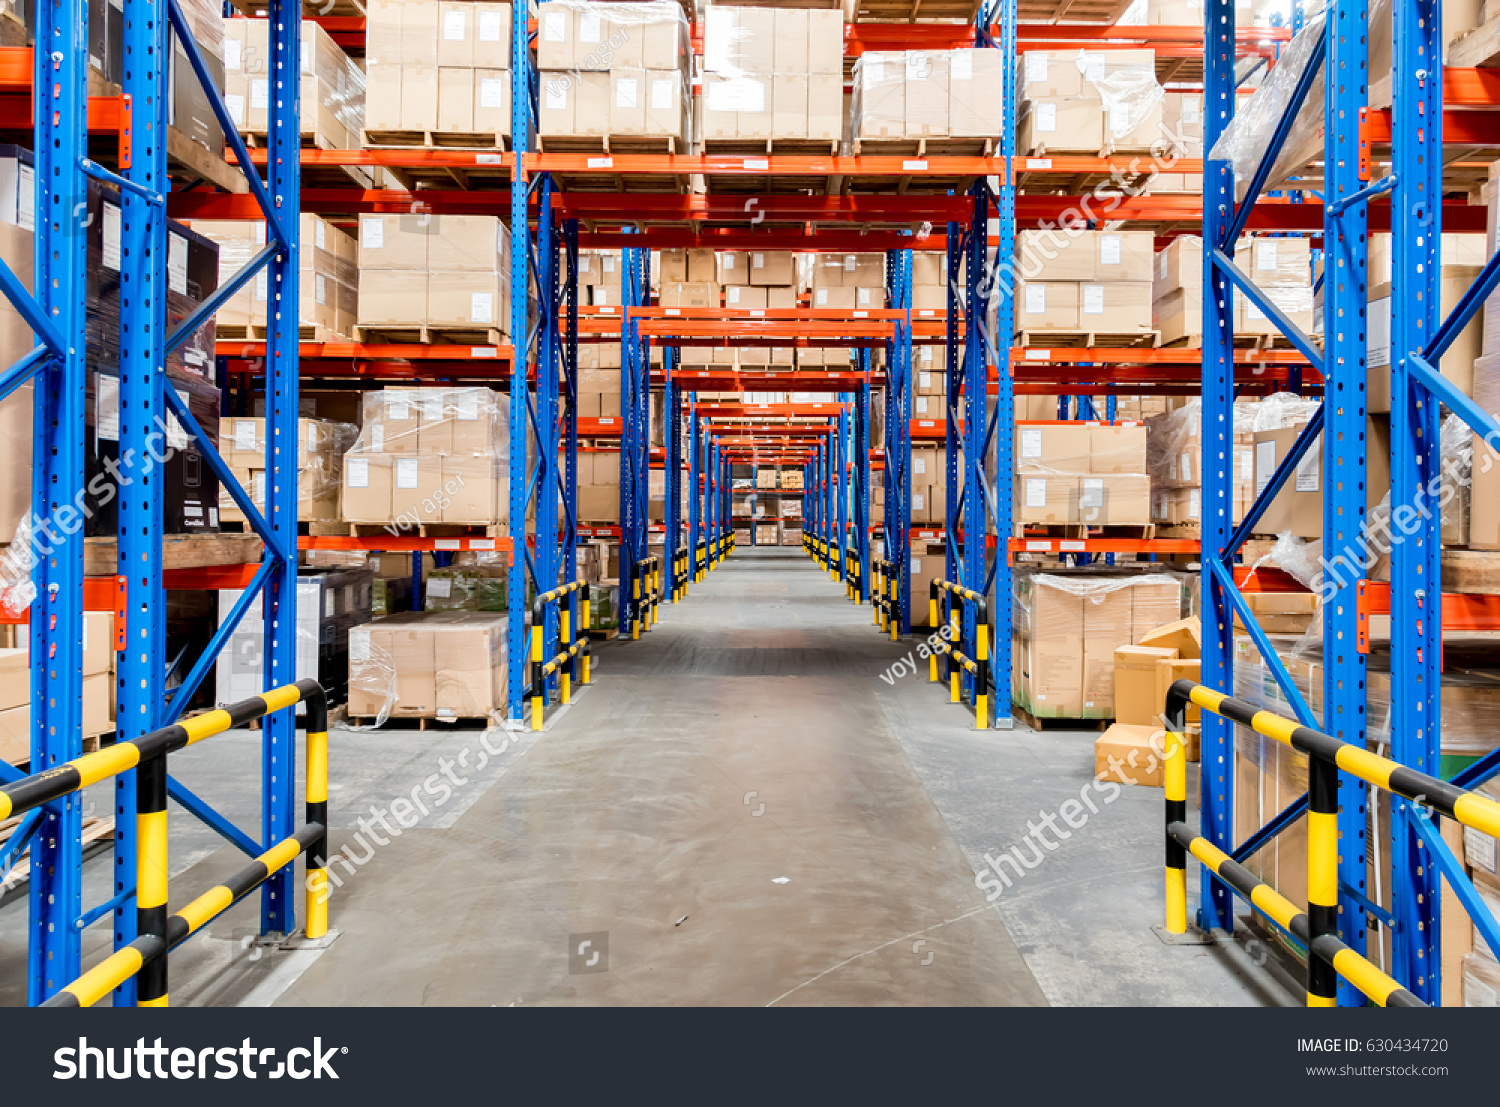 Warehouse storage of retail merchandise shop. #630434720